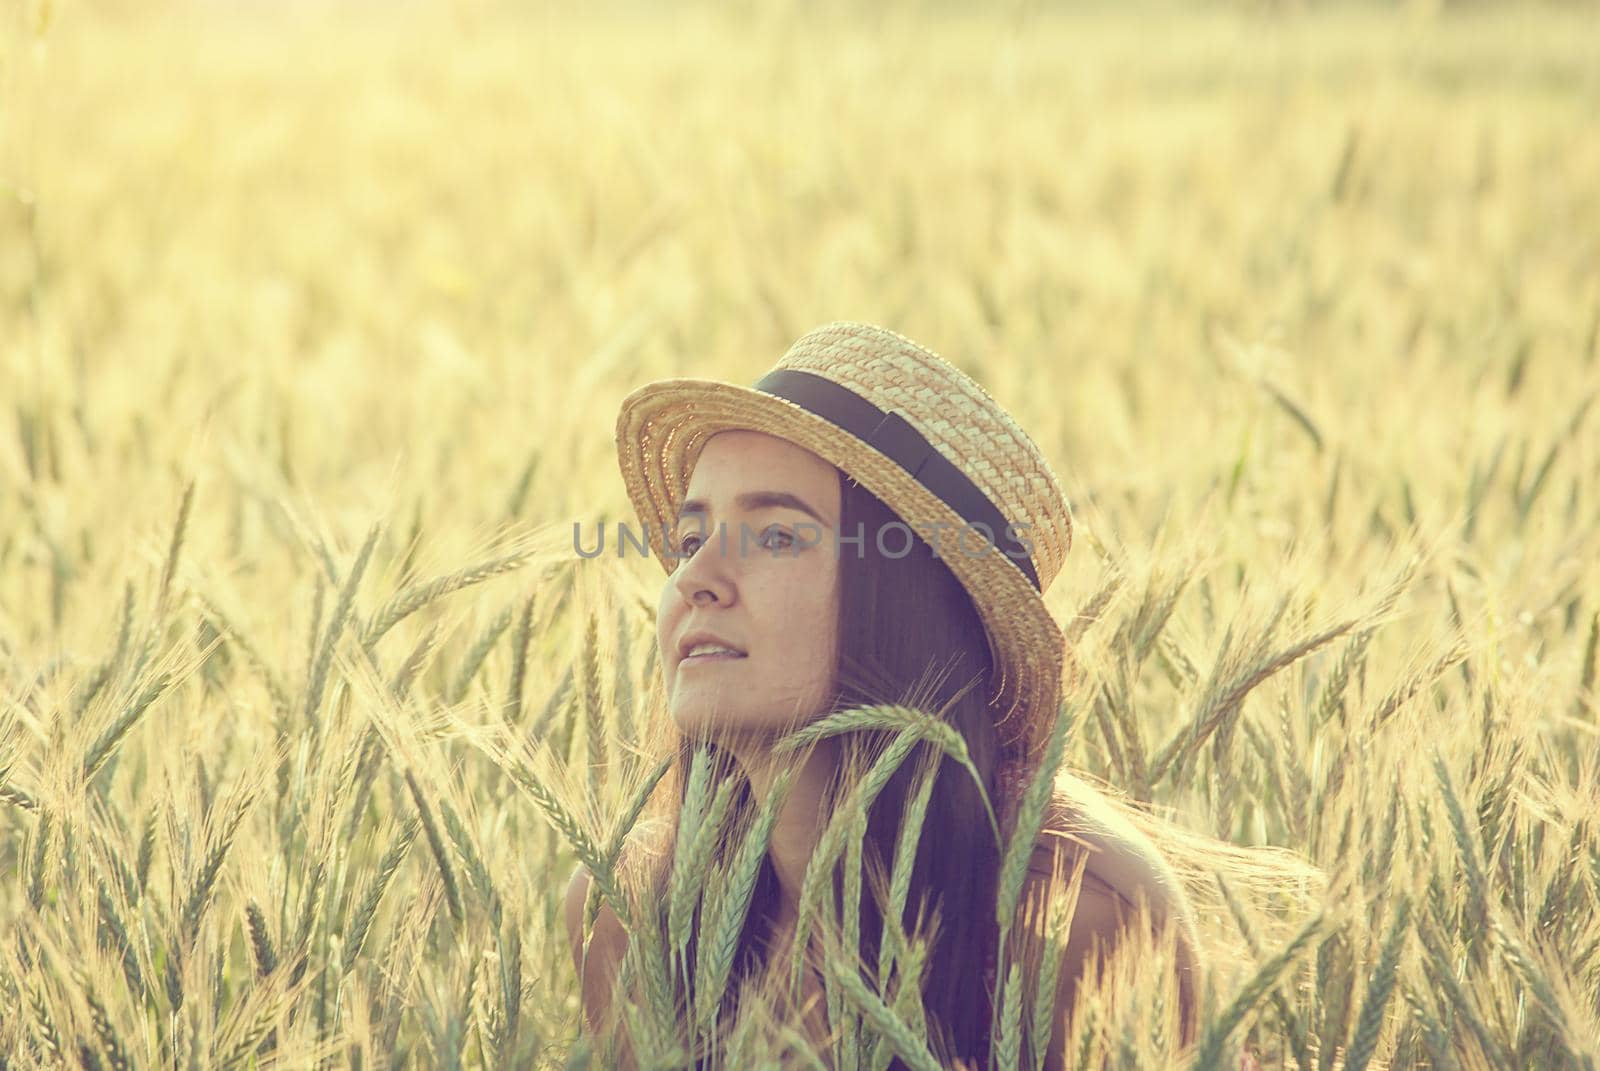 woman in wheat field by maramorosz